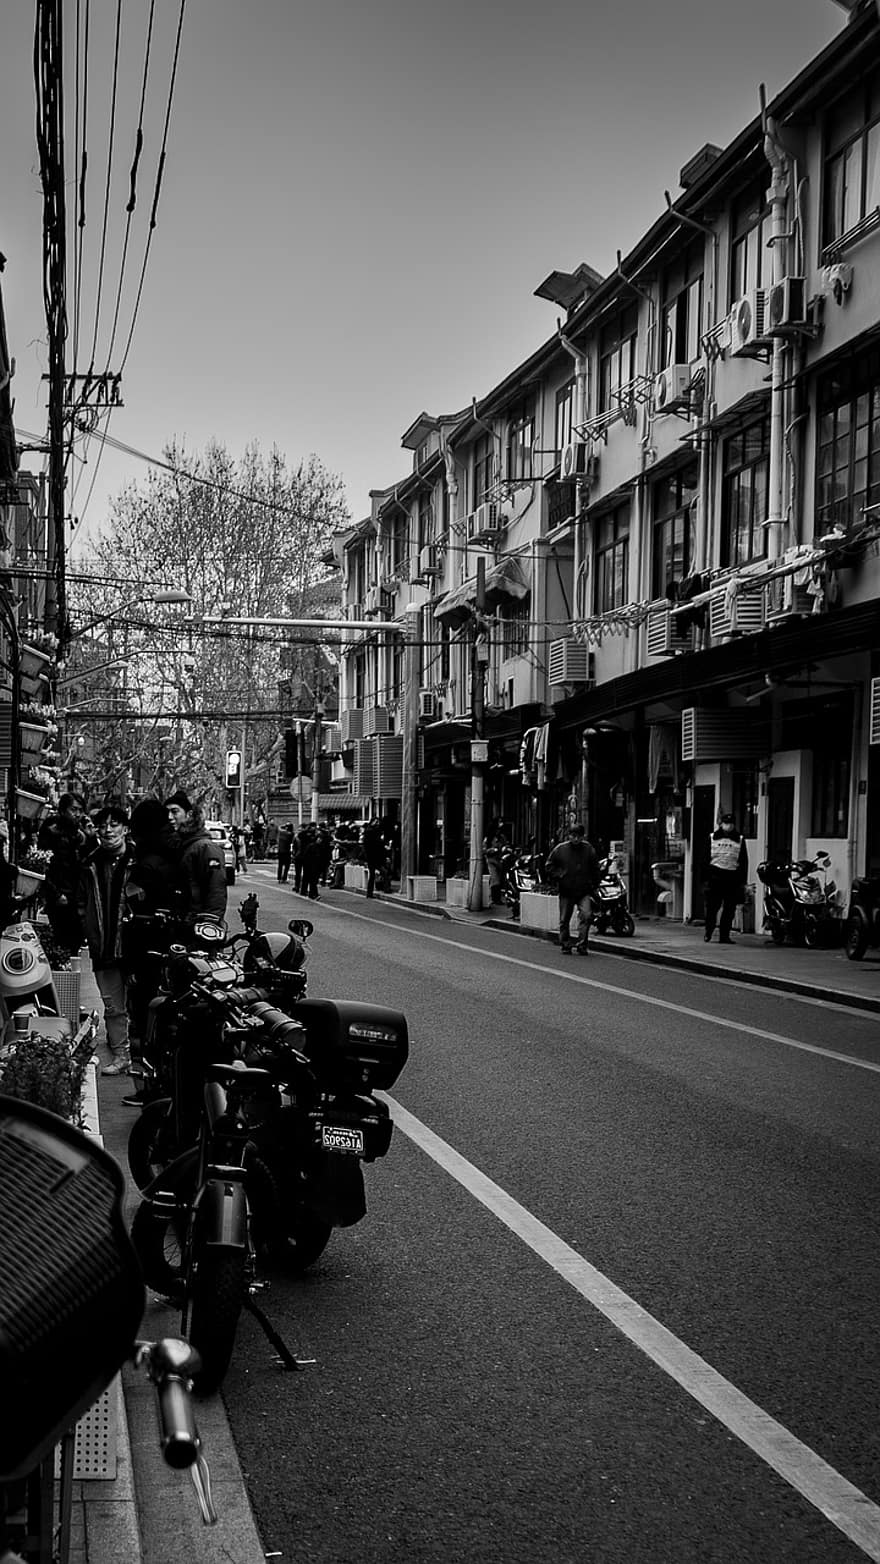 ulica, Droga Yongkang, monochromia, miejski, czarny i biały, życie w mieście, architektura, ruch drogowy, na zewnątrz budynku, transport, podróżować